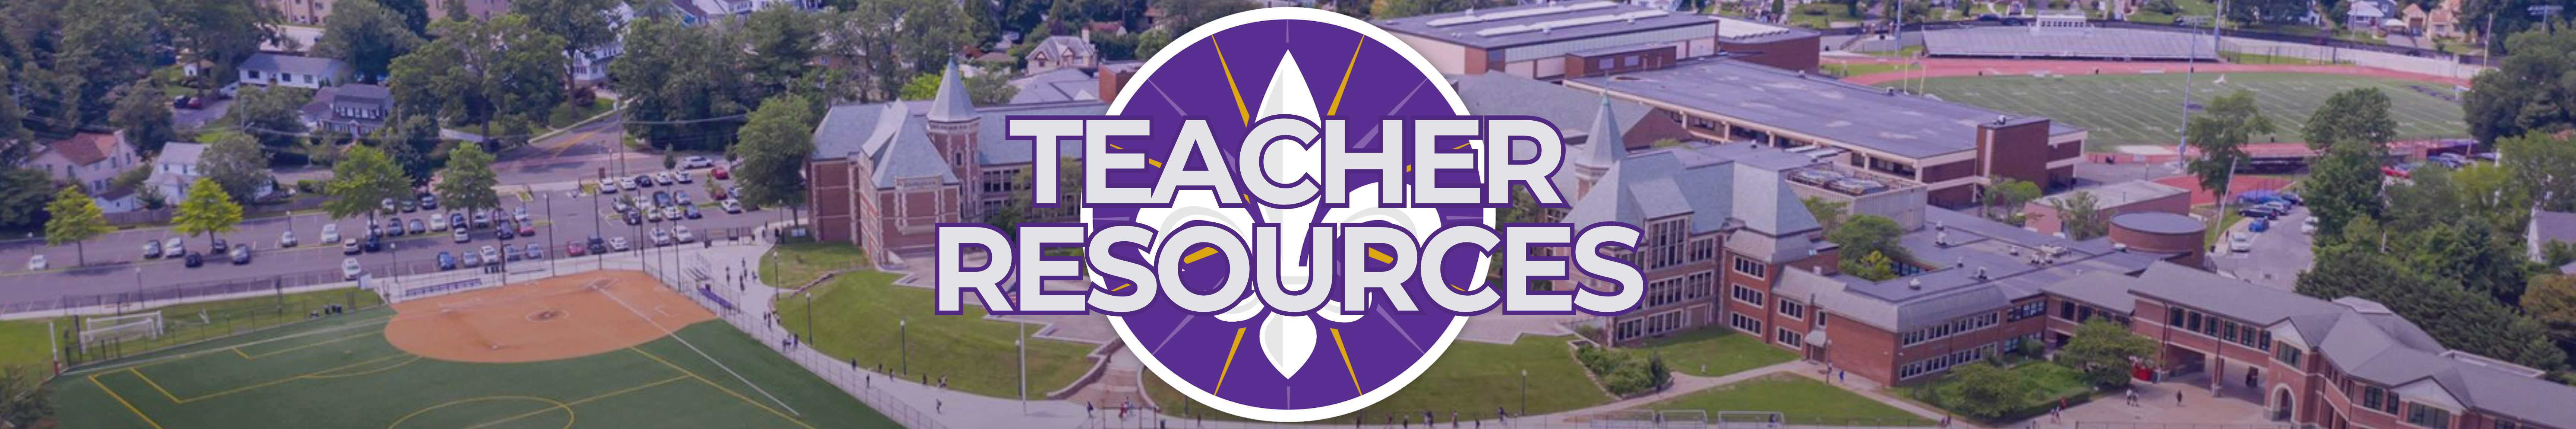 teacher resources banner